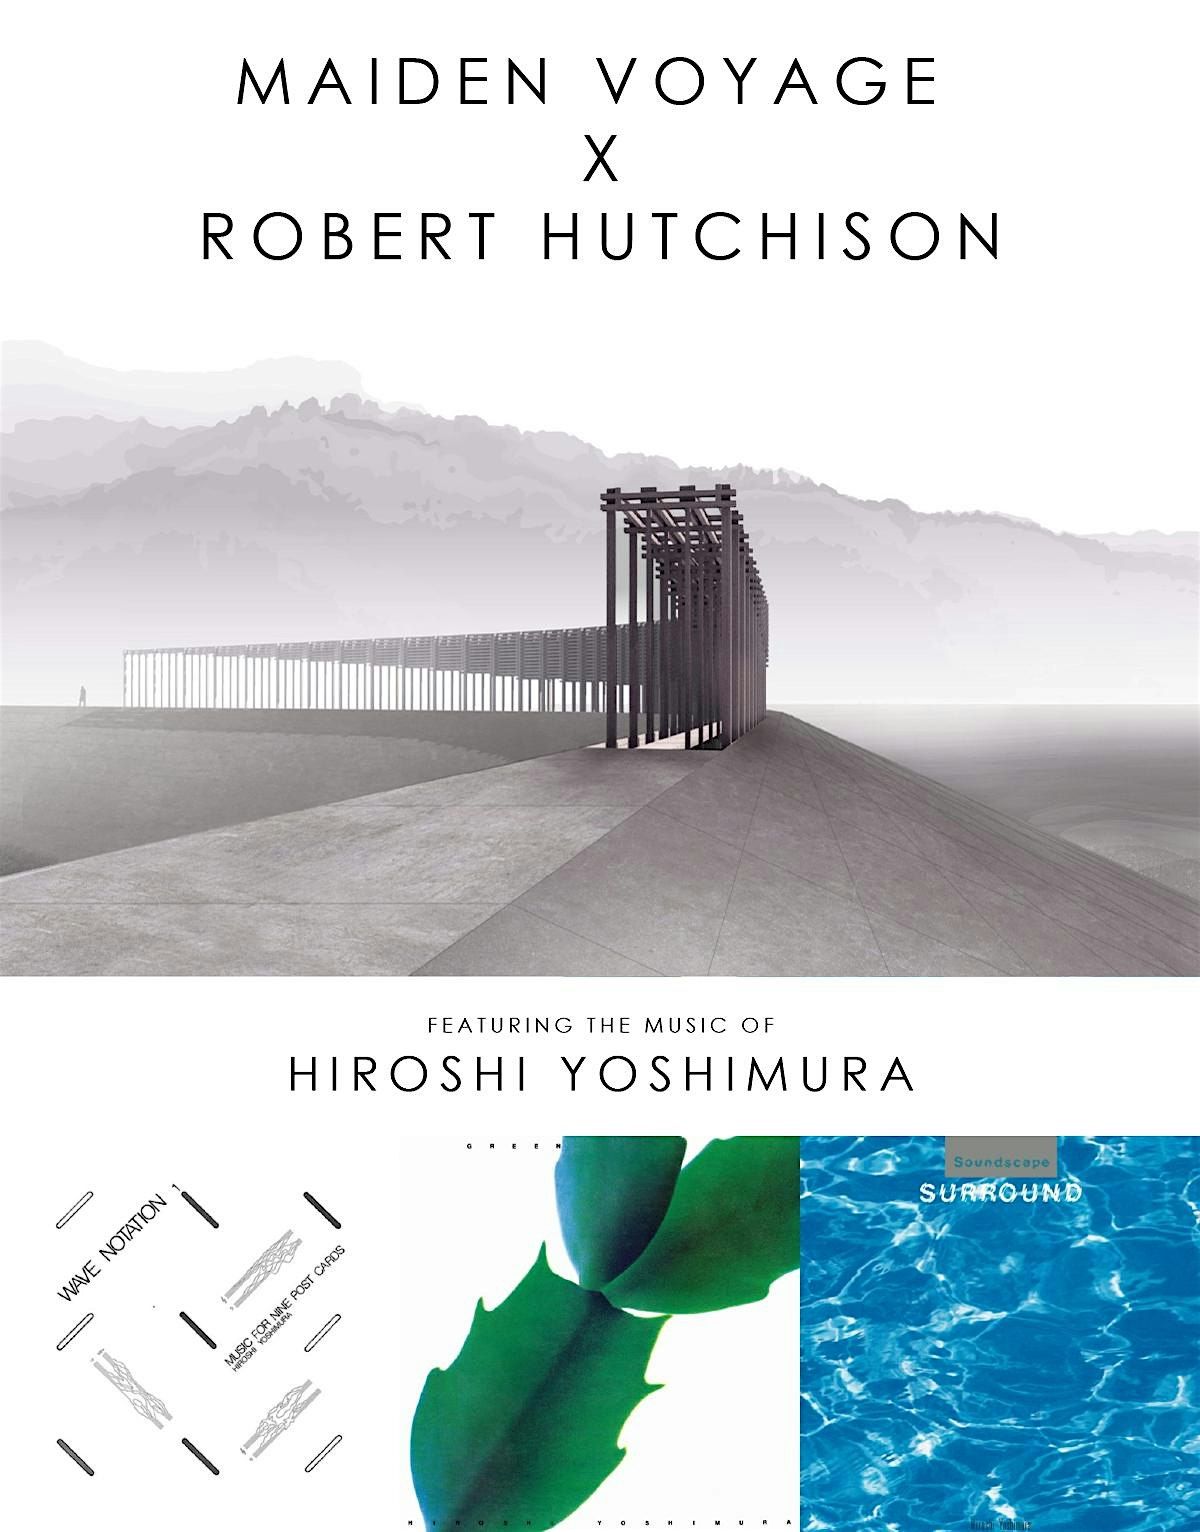 Maiden Voyage x Robert Hutchison: Hiroshi Yoshimura Listening Session